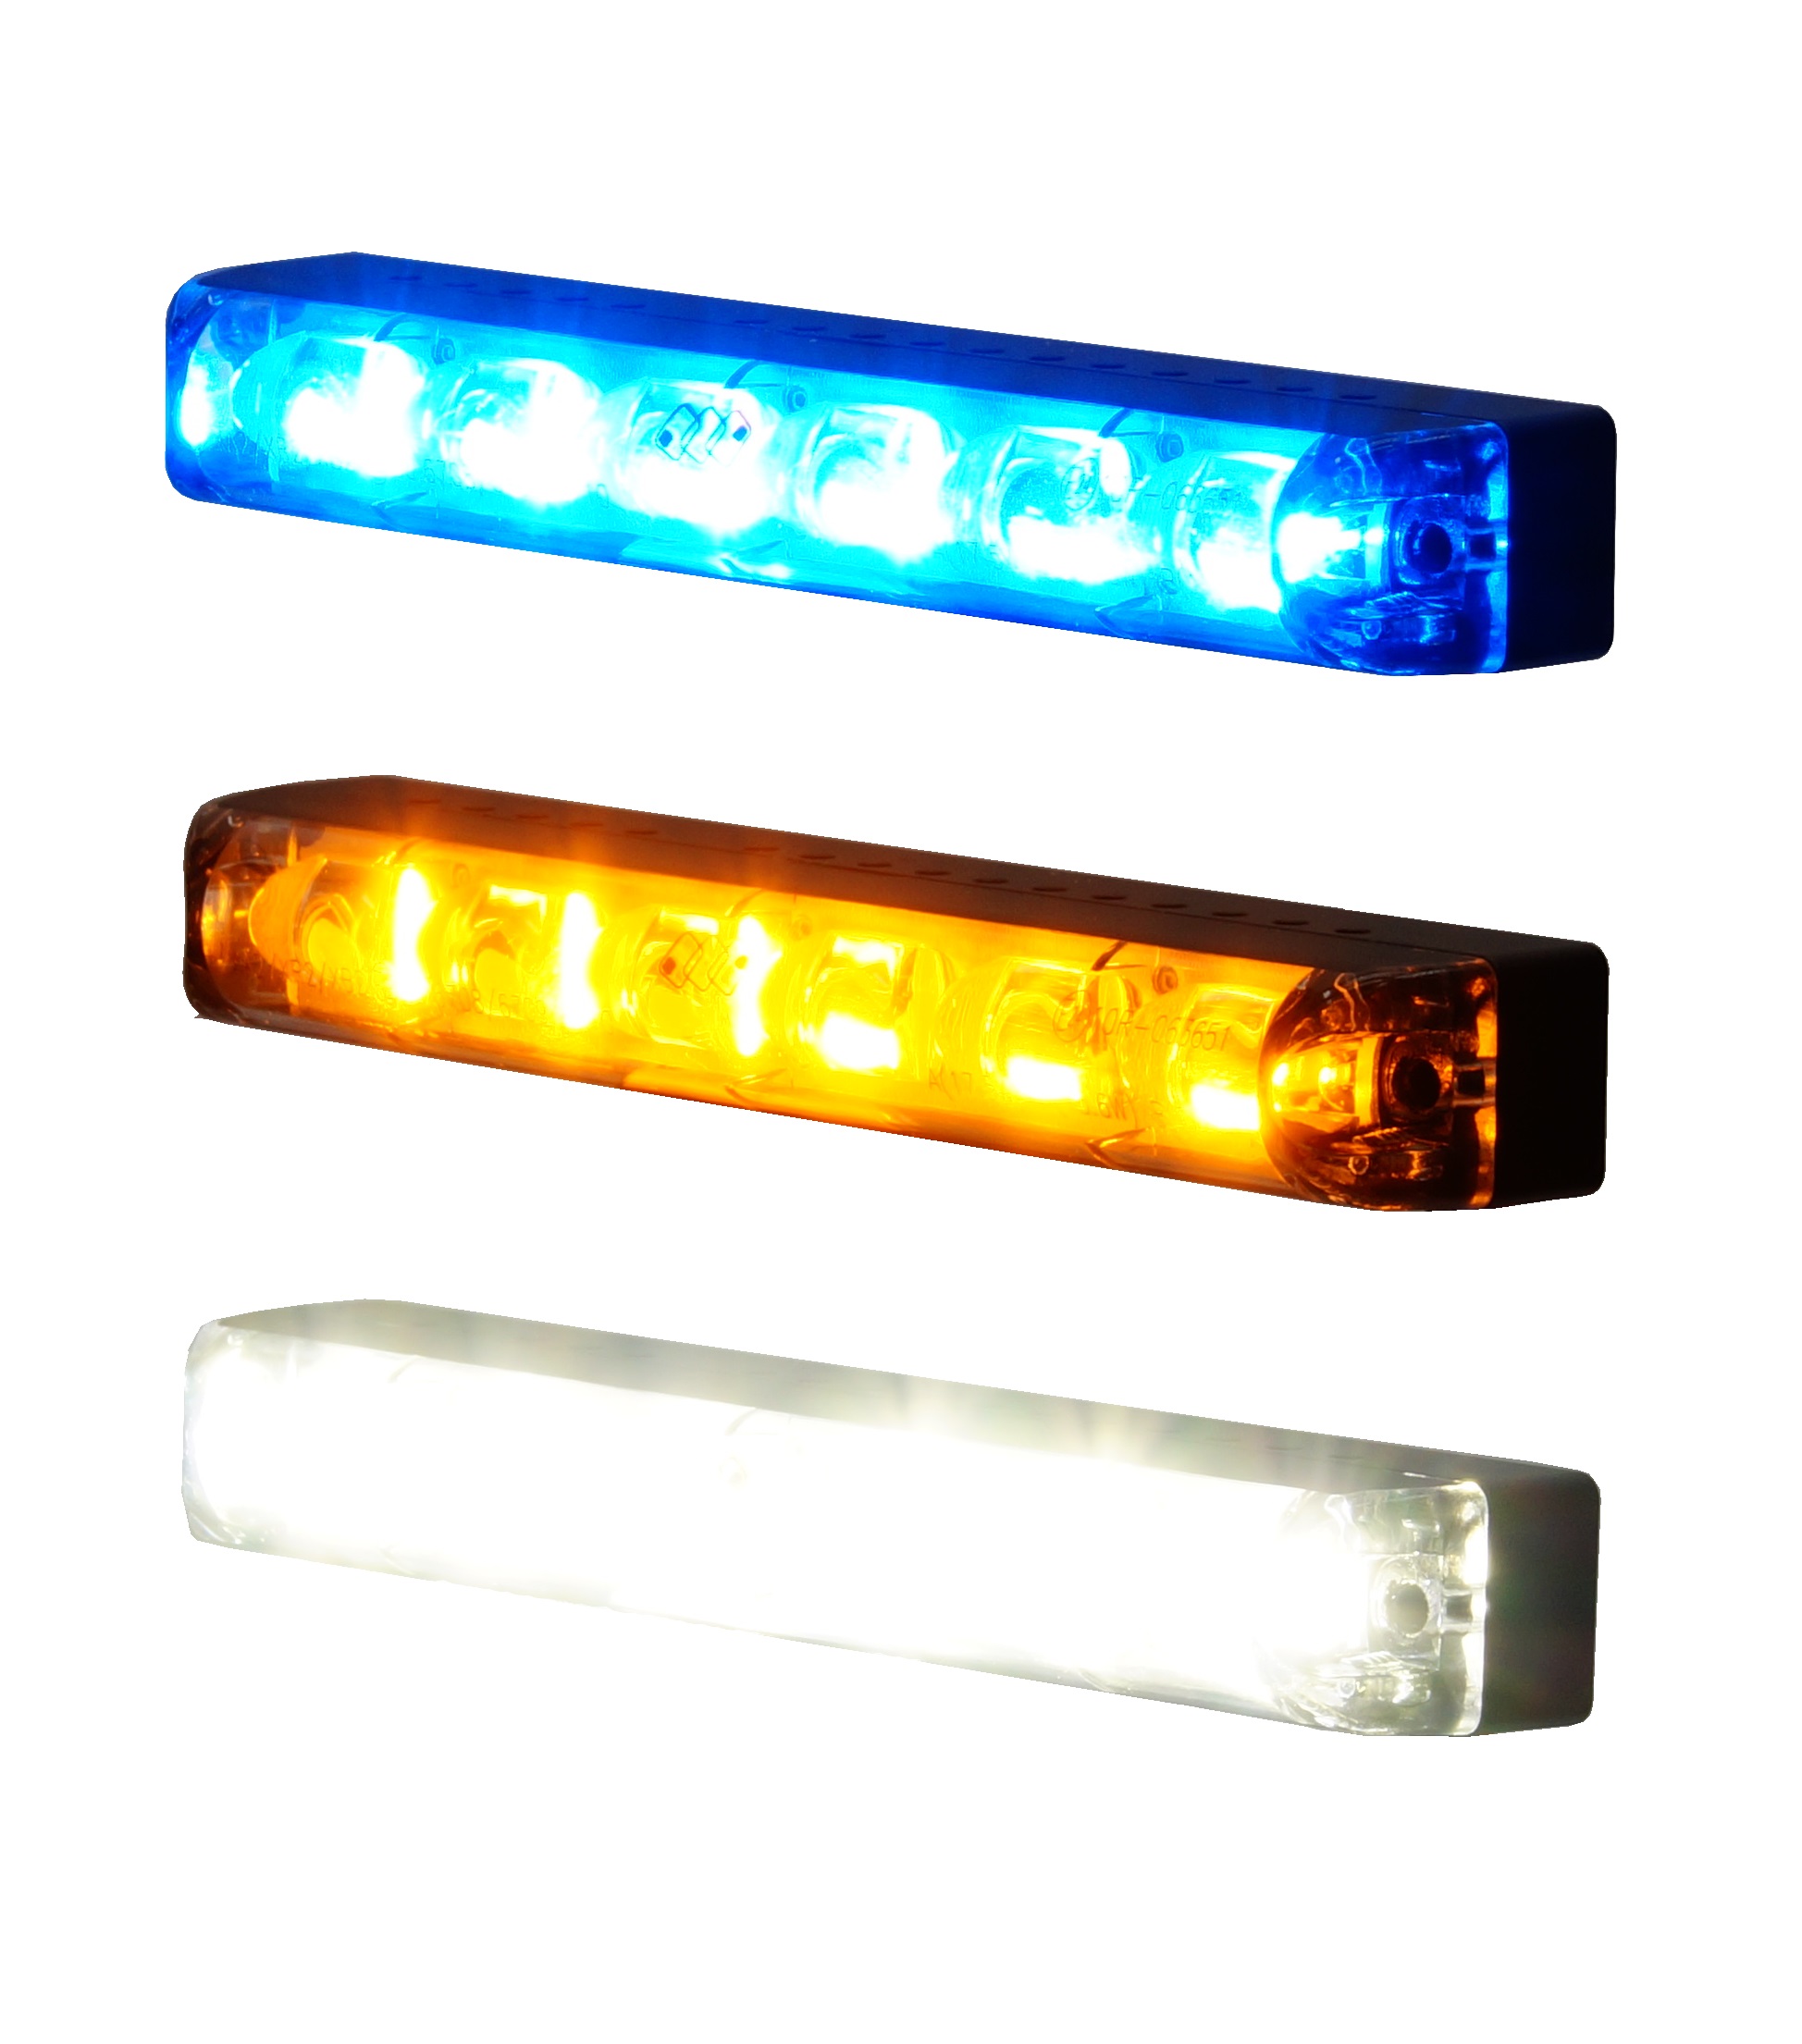 LED Frontblitzer gelb, 3 LED, Aufbaumontage, 12-24V